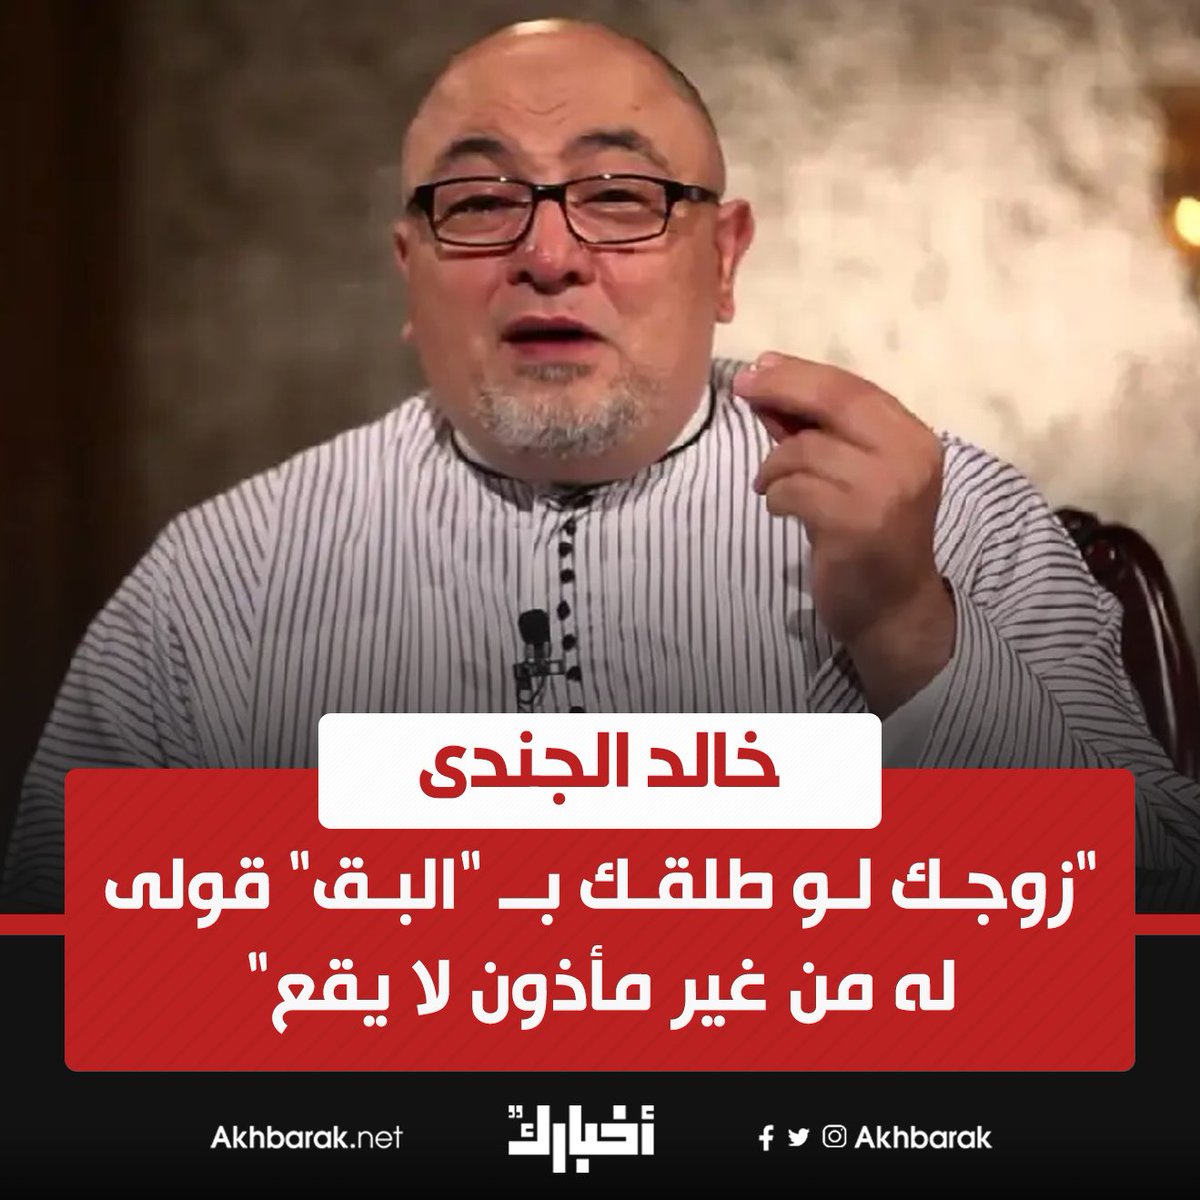 خالد الجندى "زوجك لو طلقك بـ "البق" قولى له من غير مأذون لا يقع" المصدر اليوم السابع